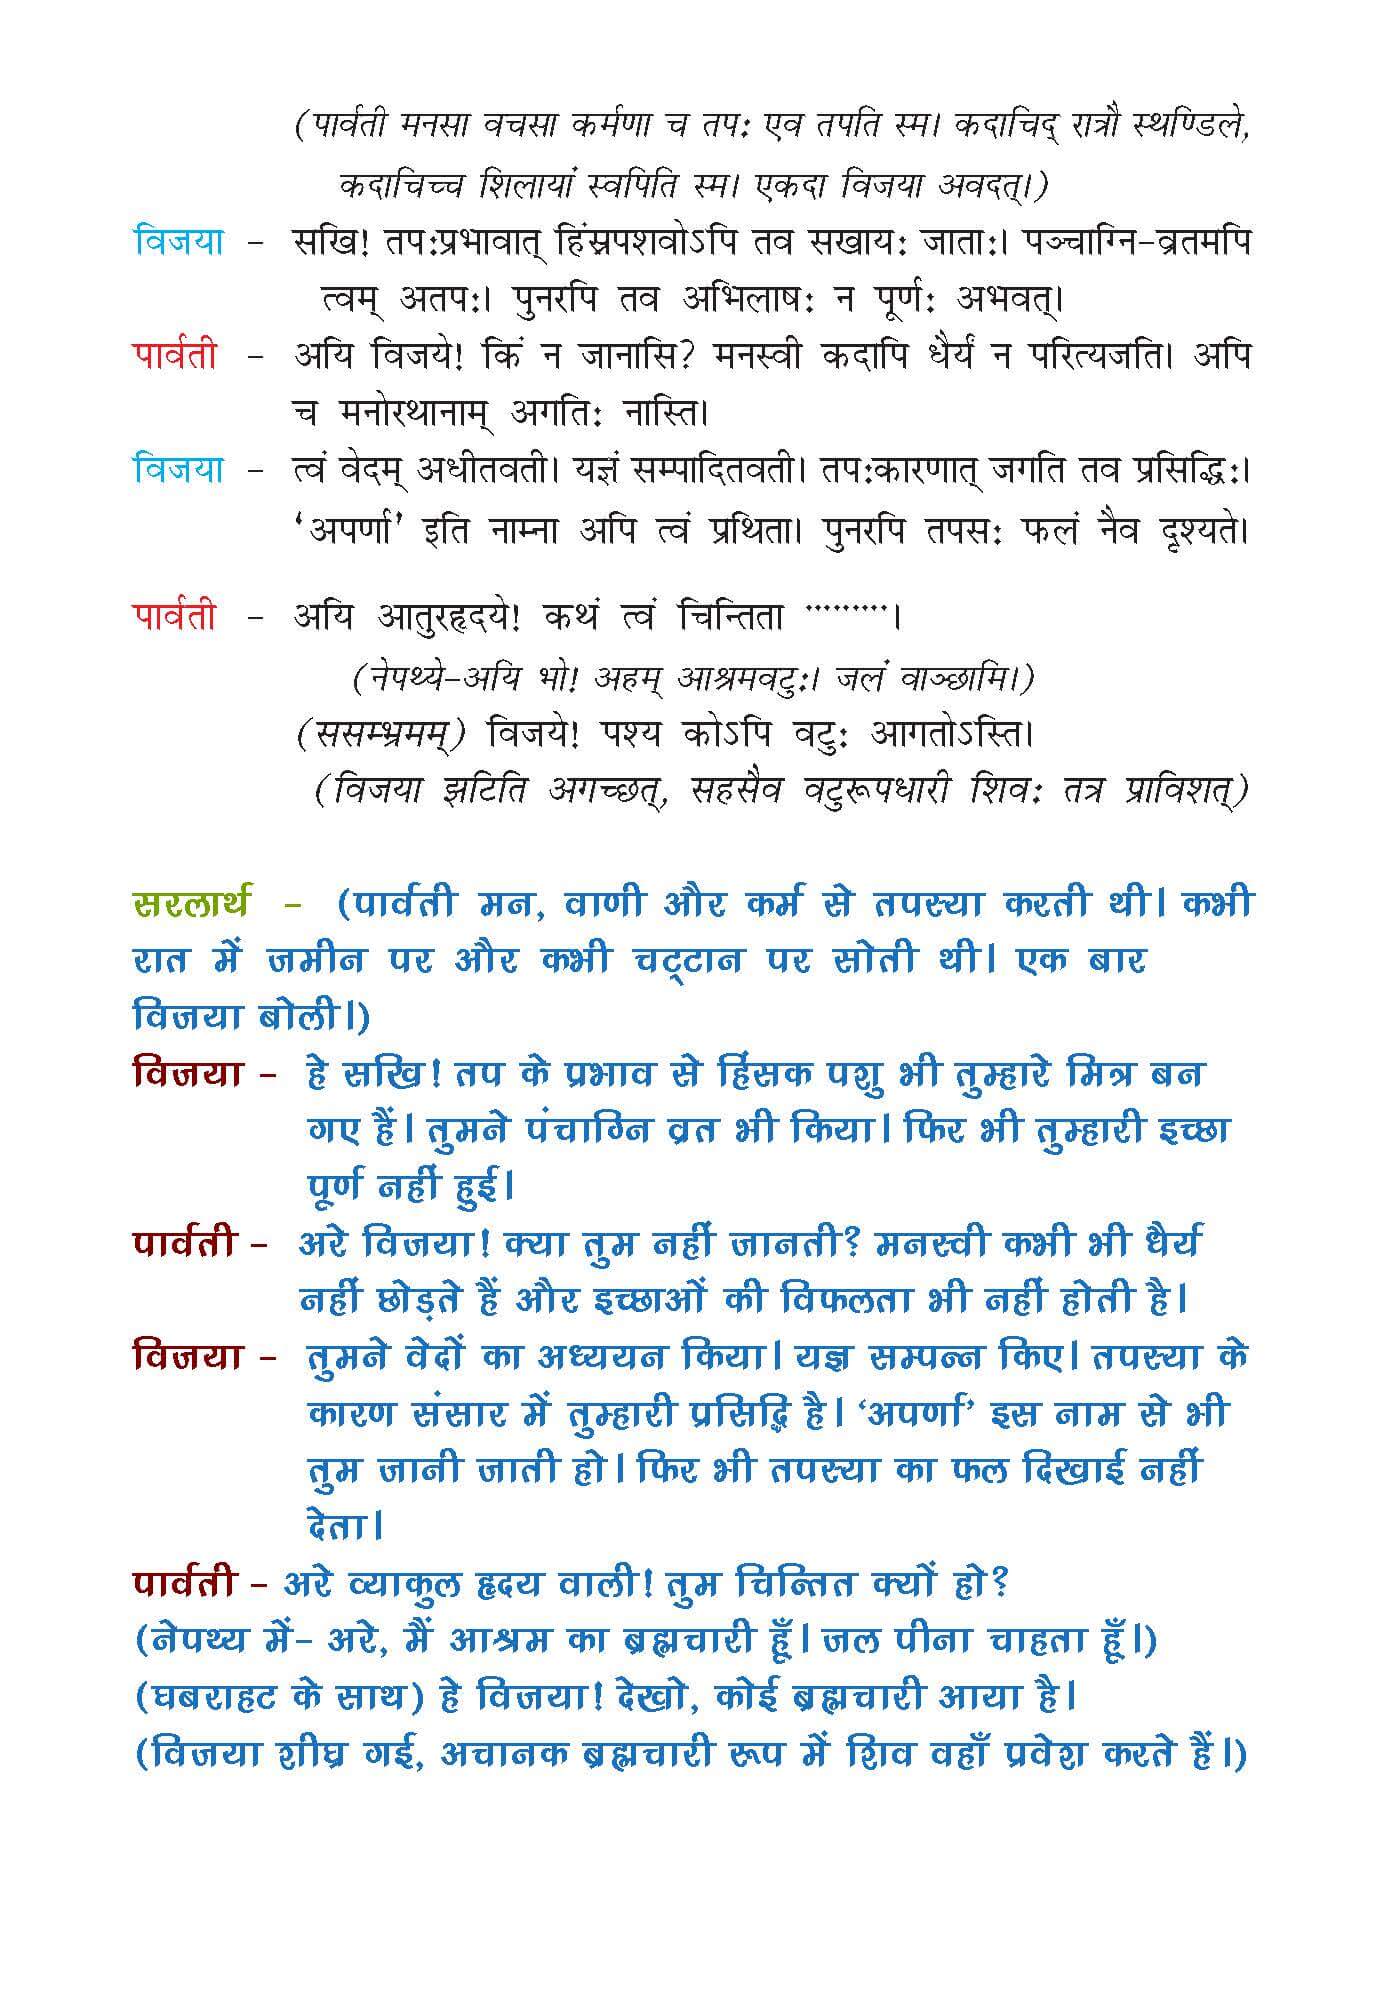 NCERT Solution For Class 7 Sanskrit Chapter 6 part 2